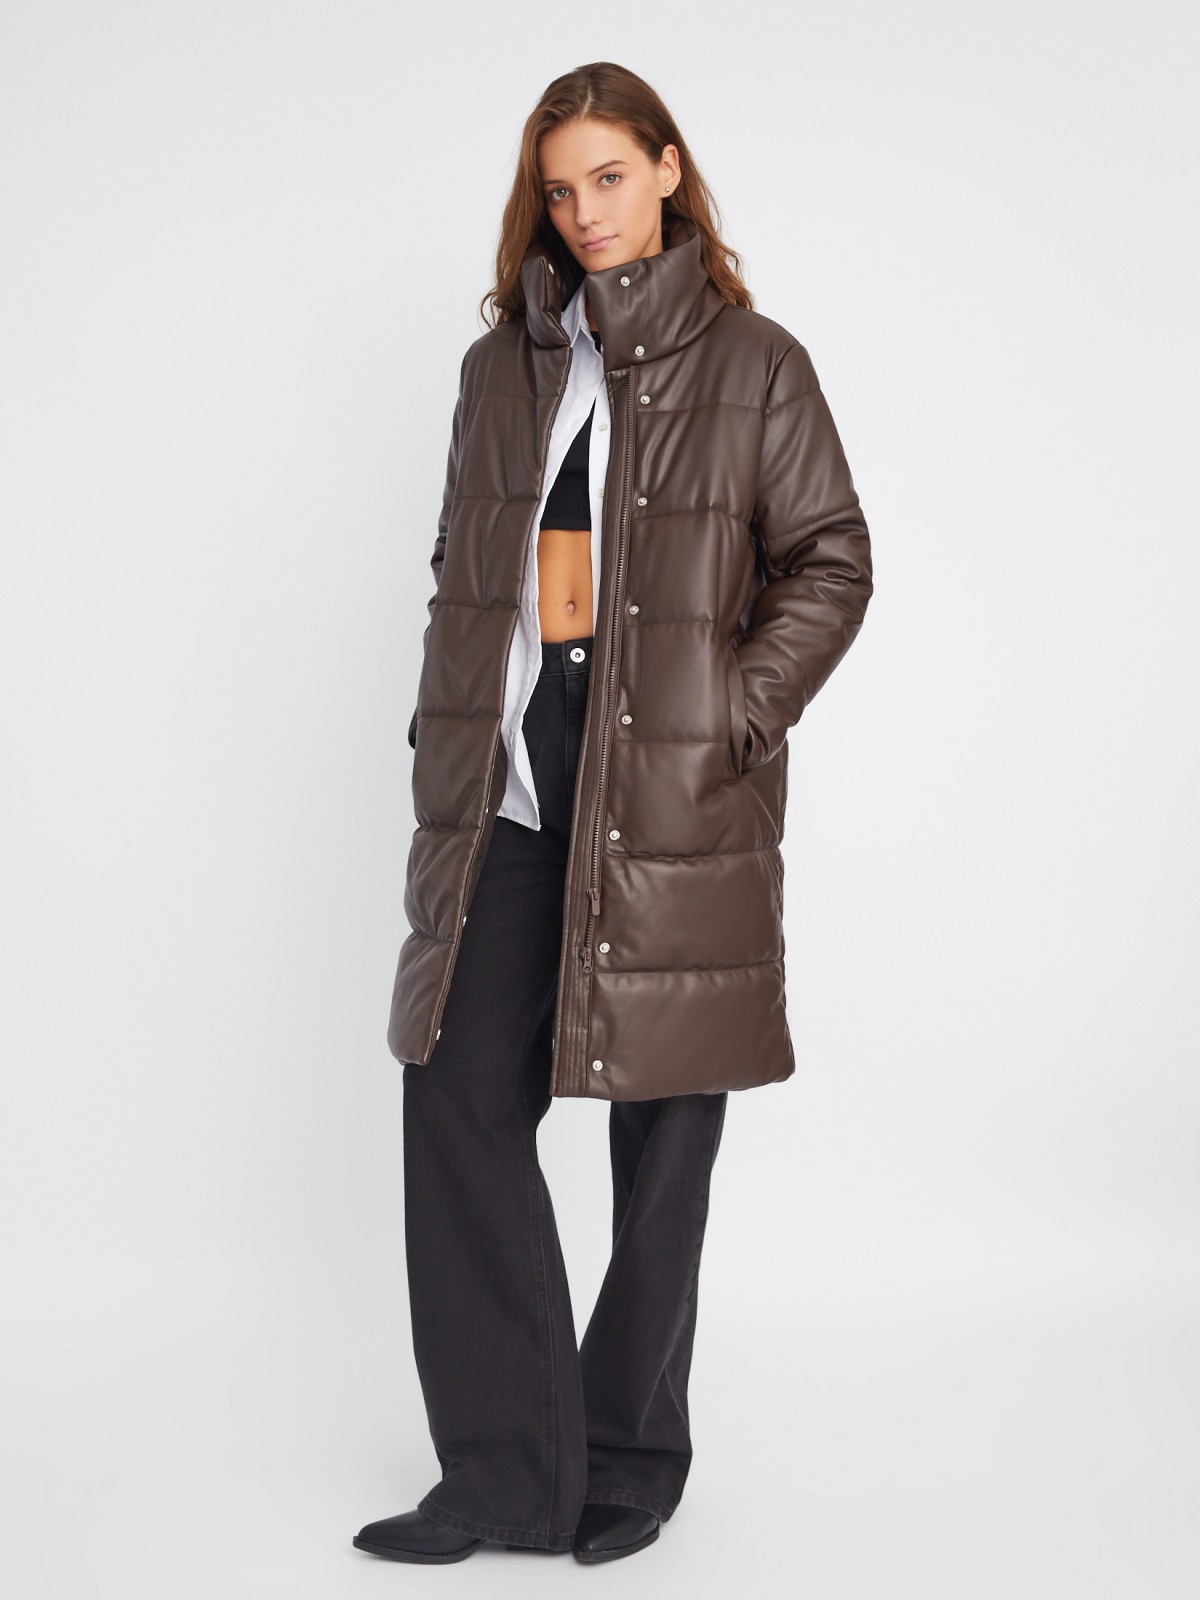 Тёплая стёганая куртка-пальто из экокожи с высоким воротником zolla 023345202054, цвет коричневый, размер XS - фото 2